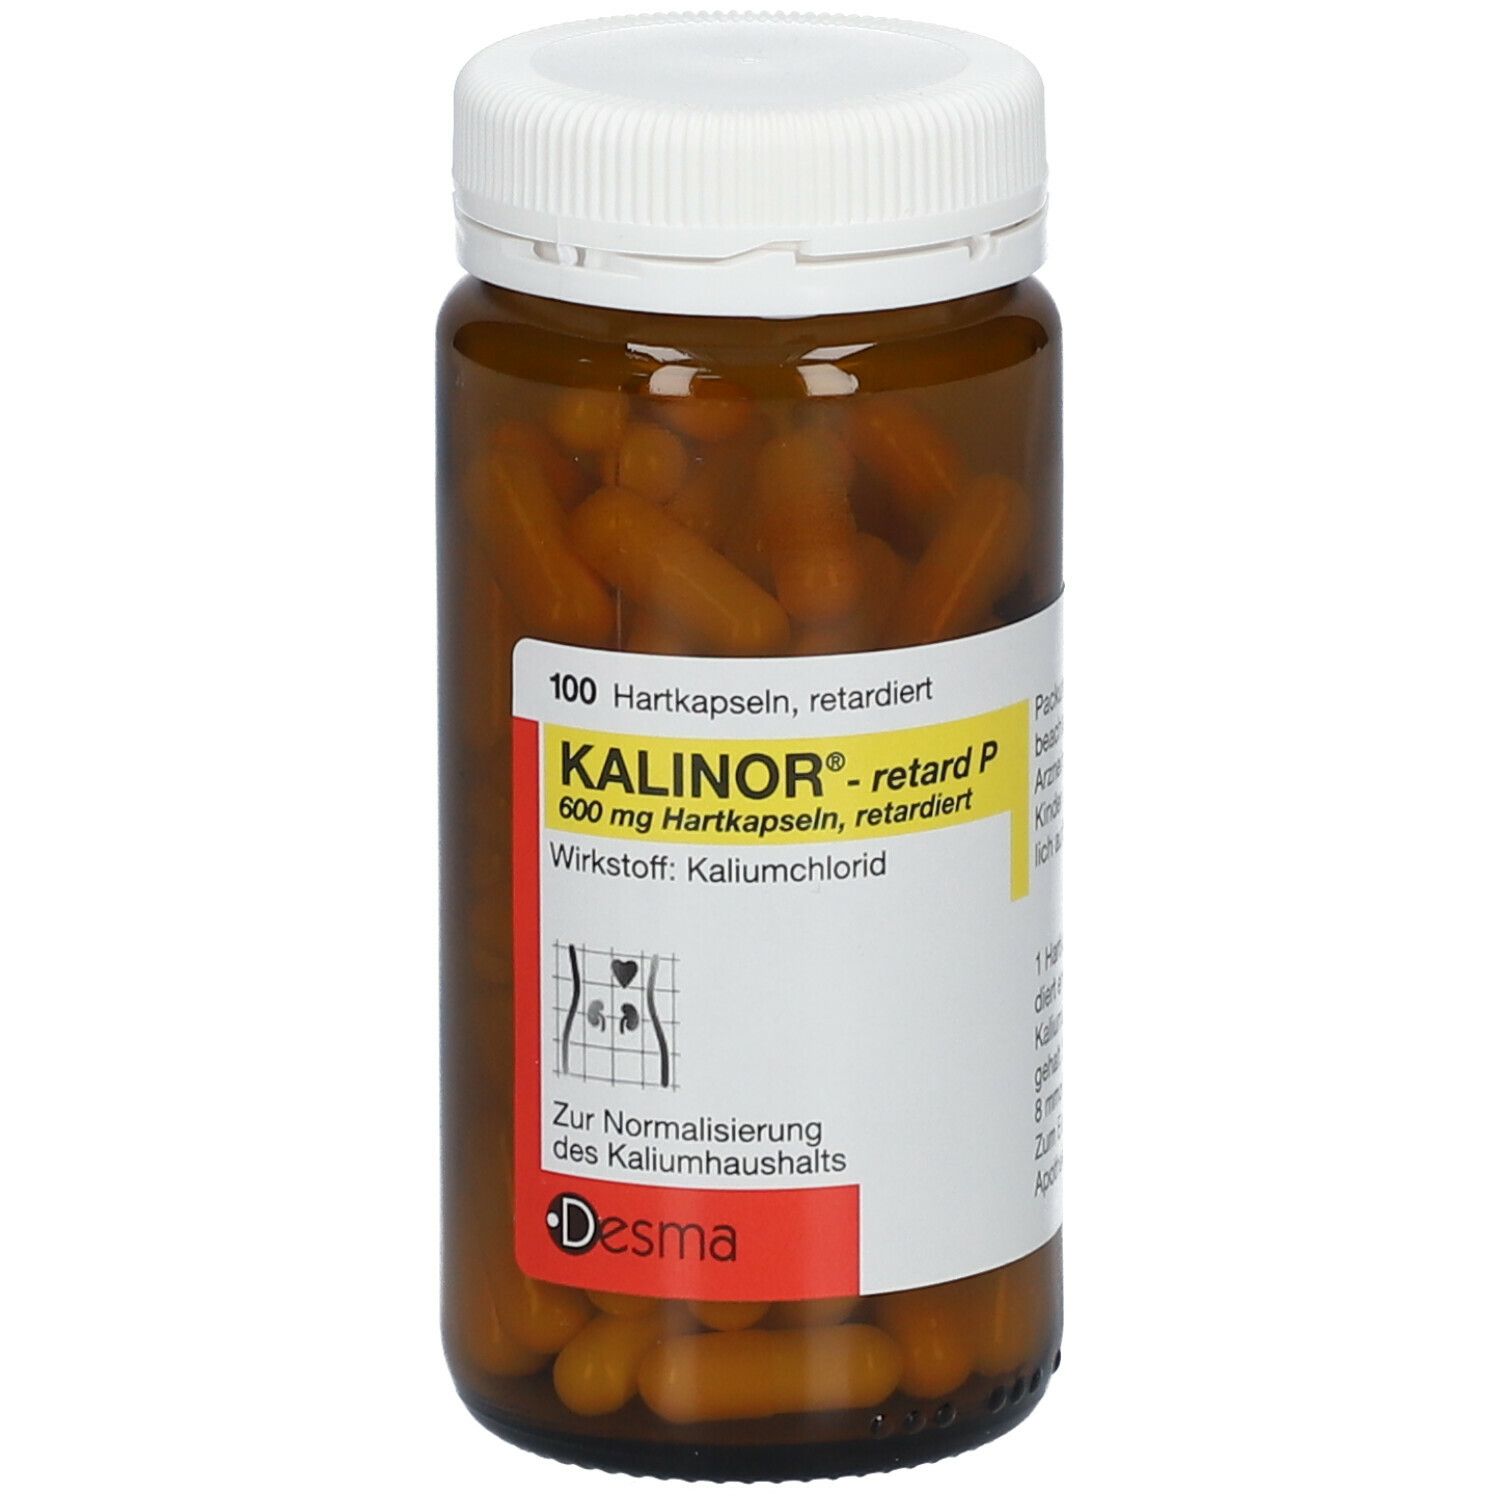 Kalinor®- retard P